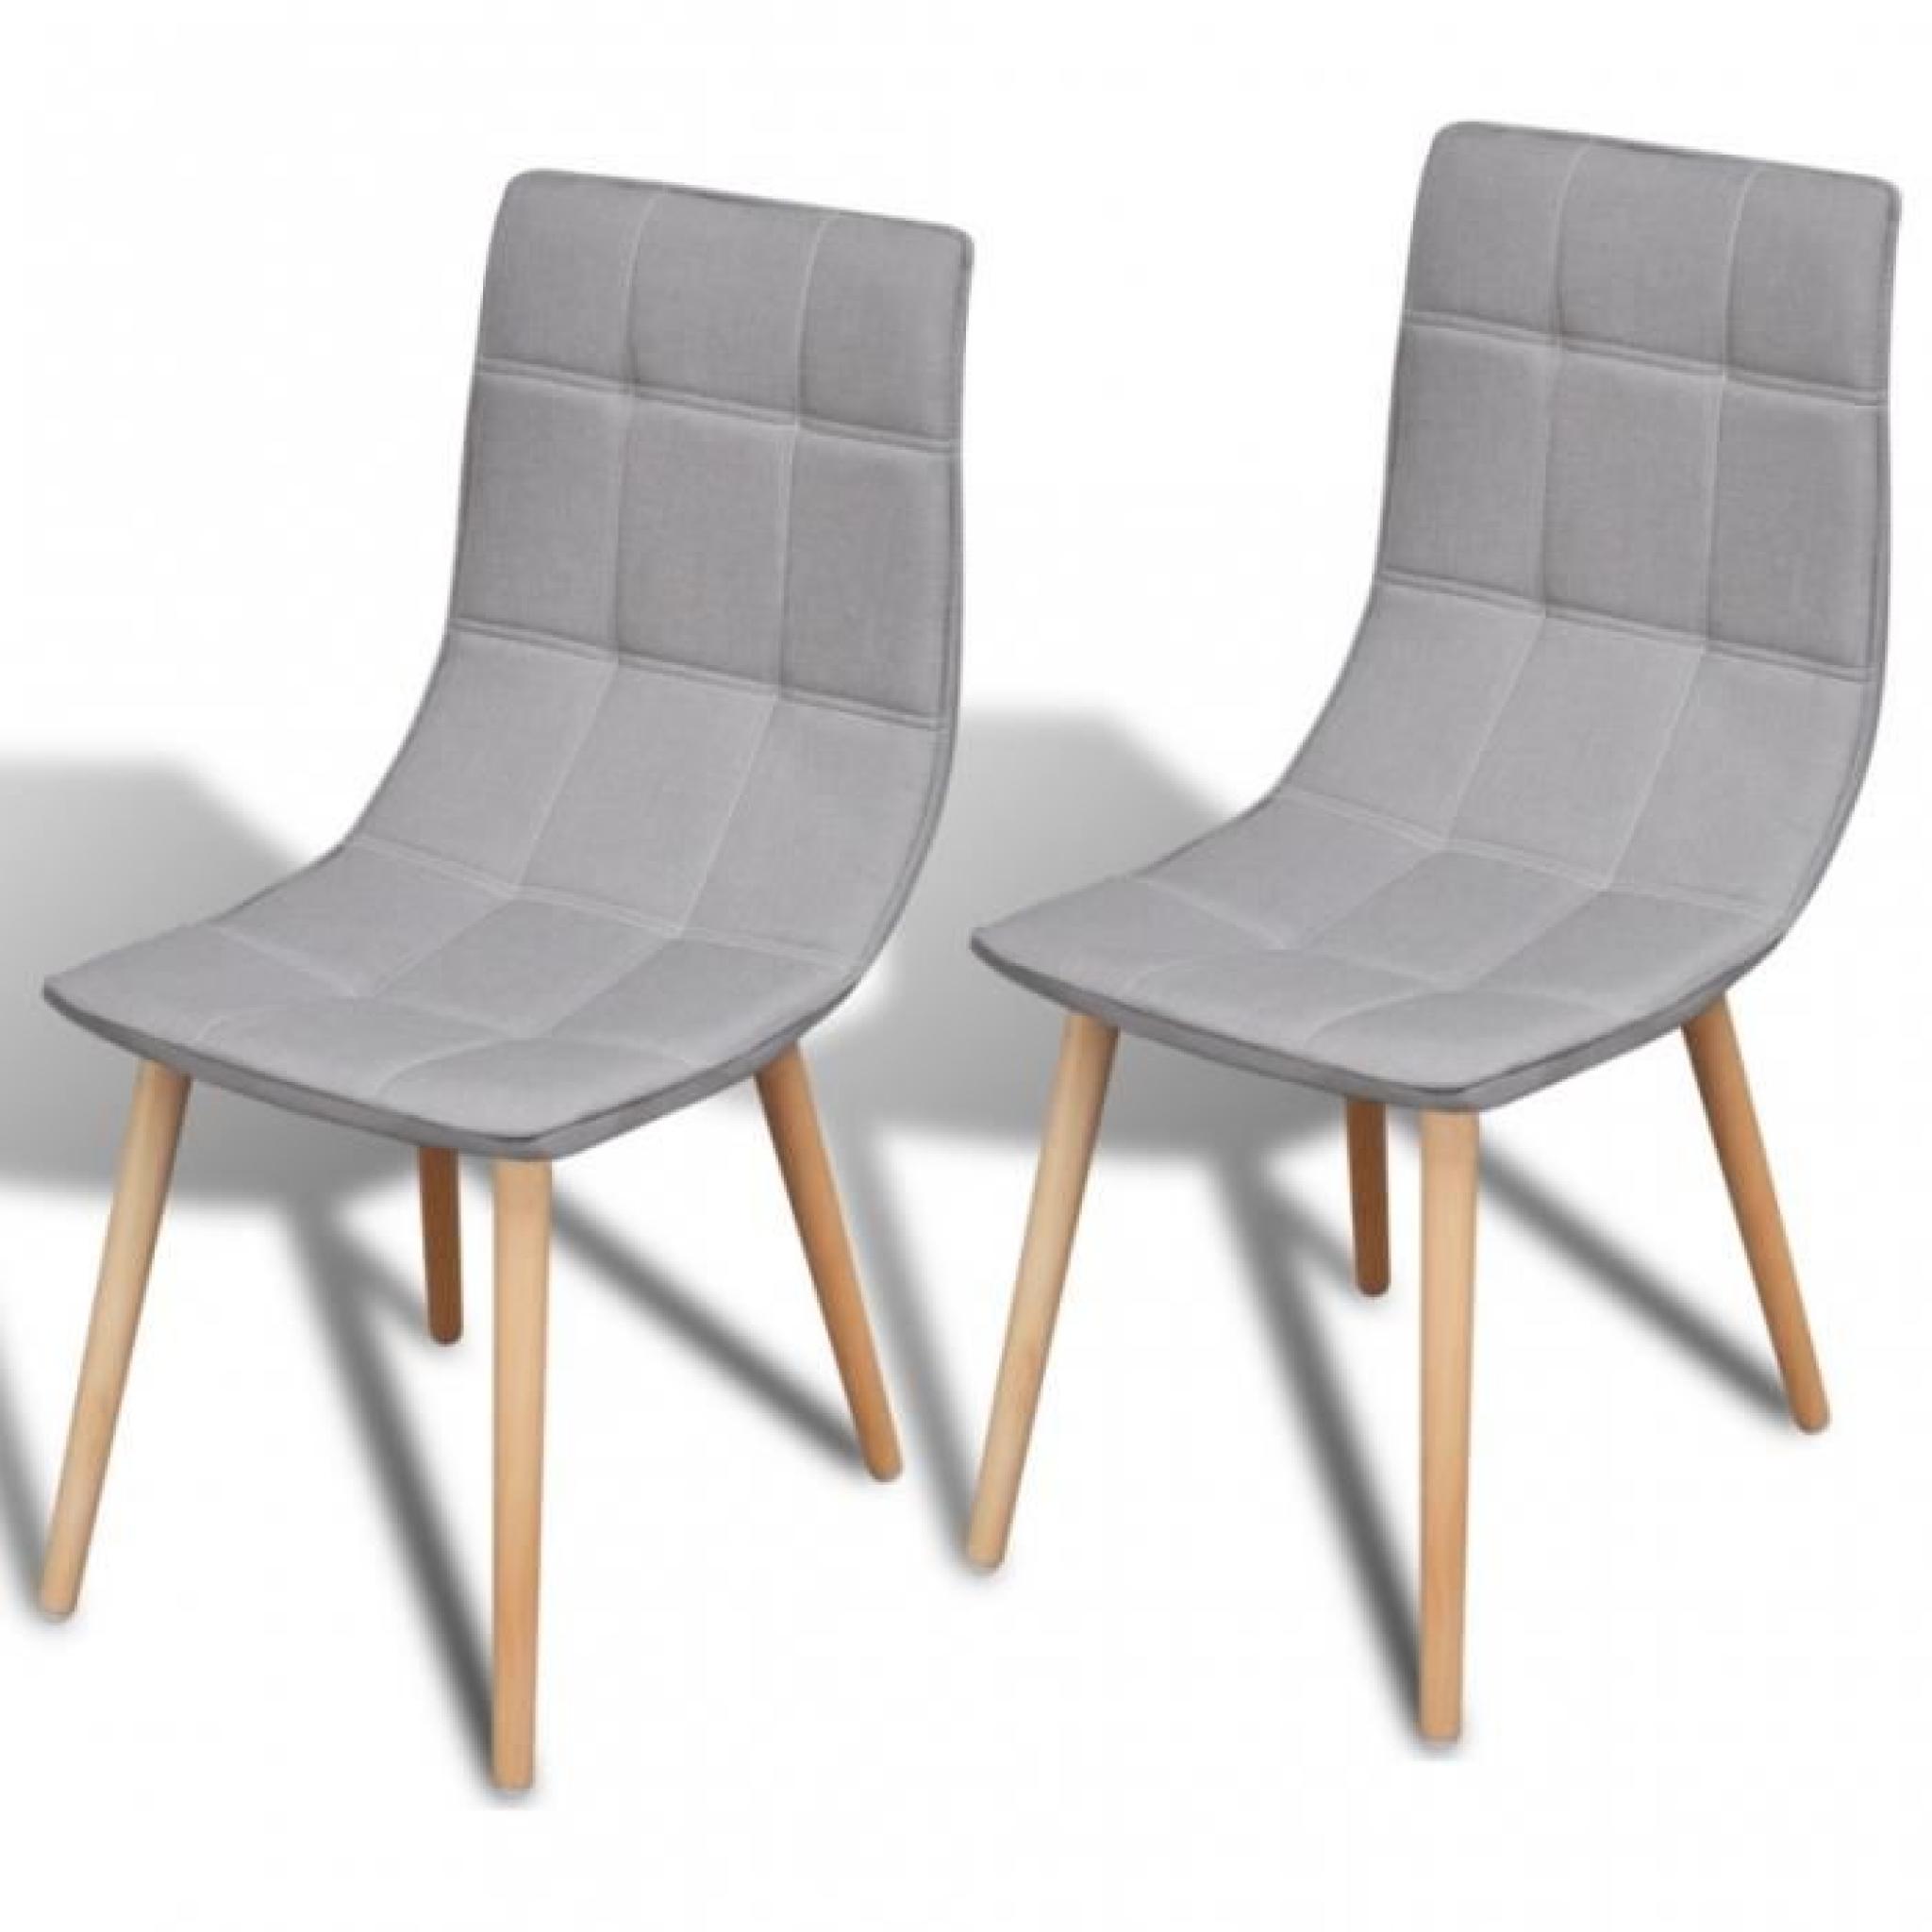 e set de chaises de salle à manger, d'un design ergonomique, apportera une touche confortable et élégante à votre maison. Avec ce...